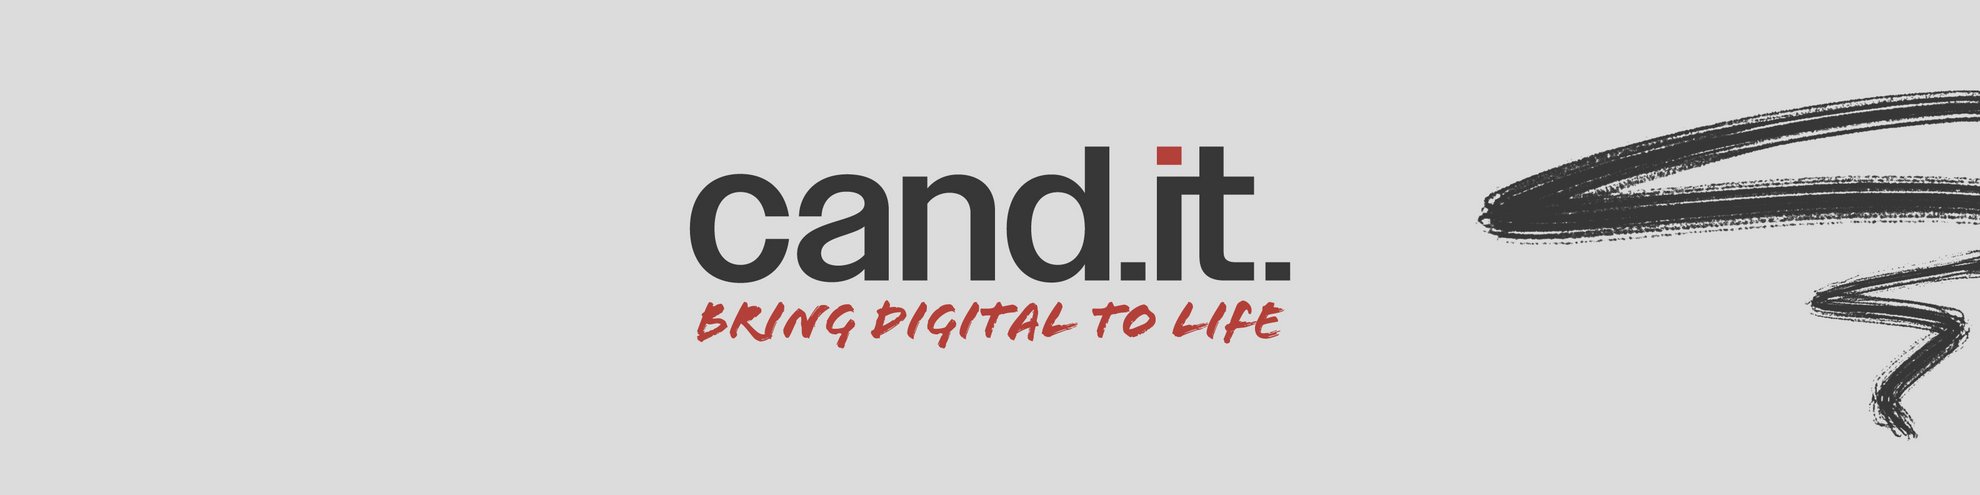 Coverbillede med slogan "Cand.it. - bring digital to life", sort og rød skrift.